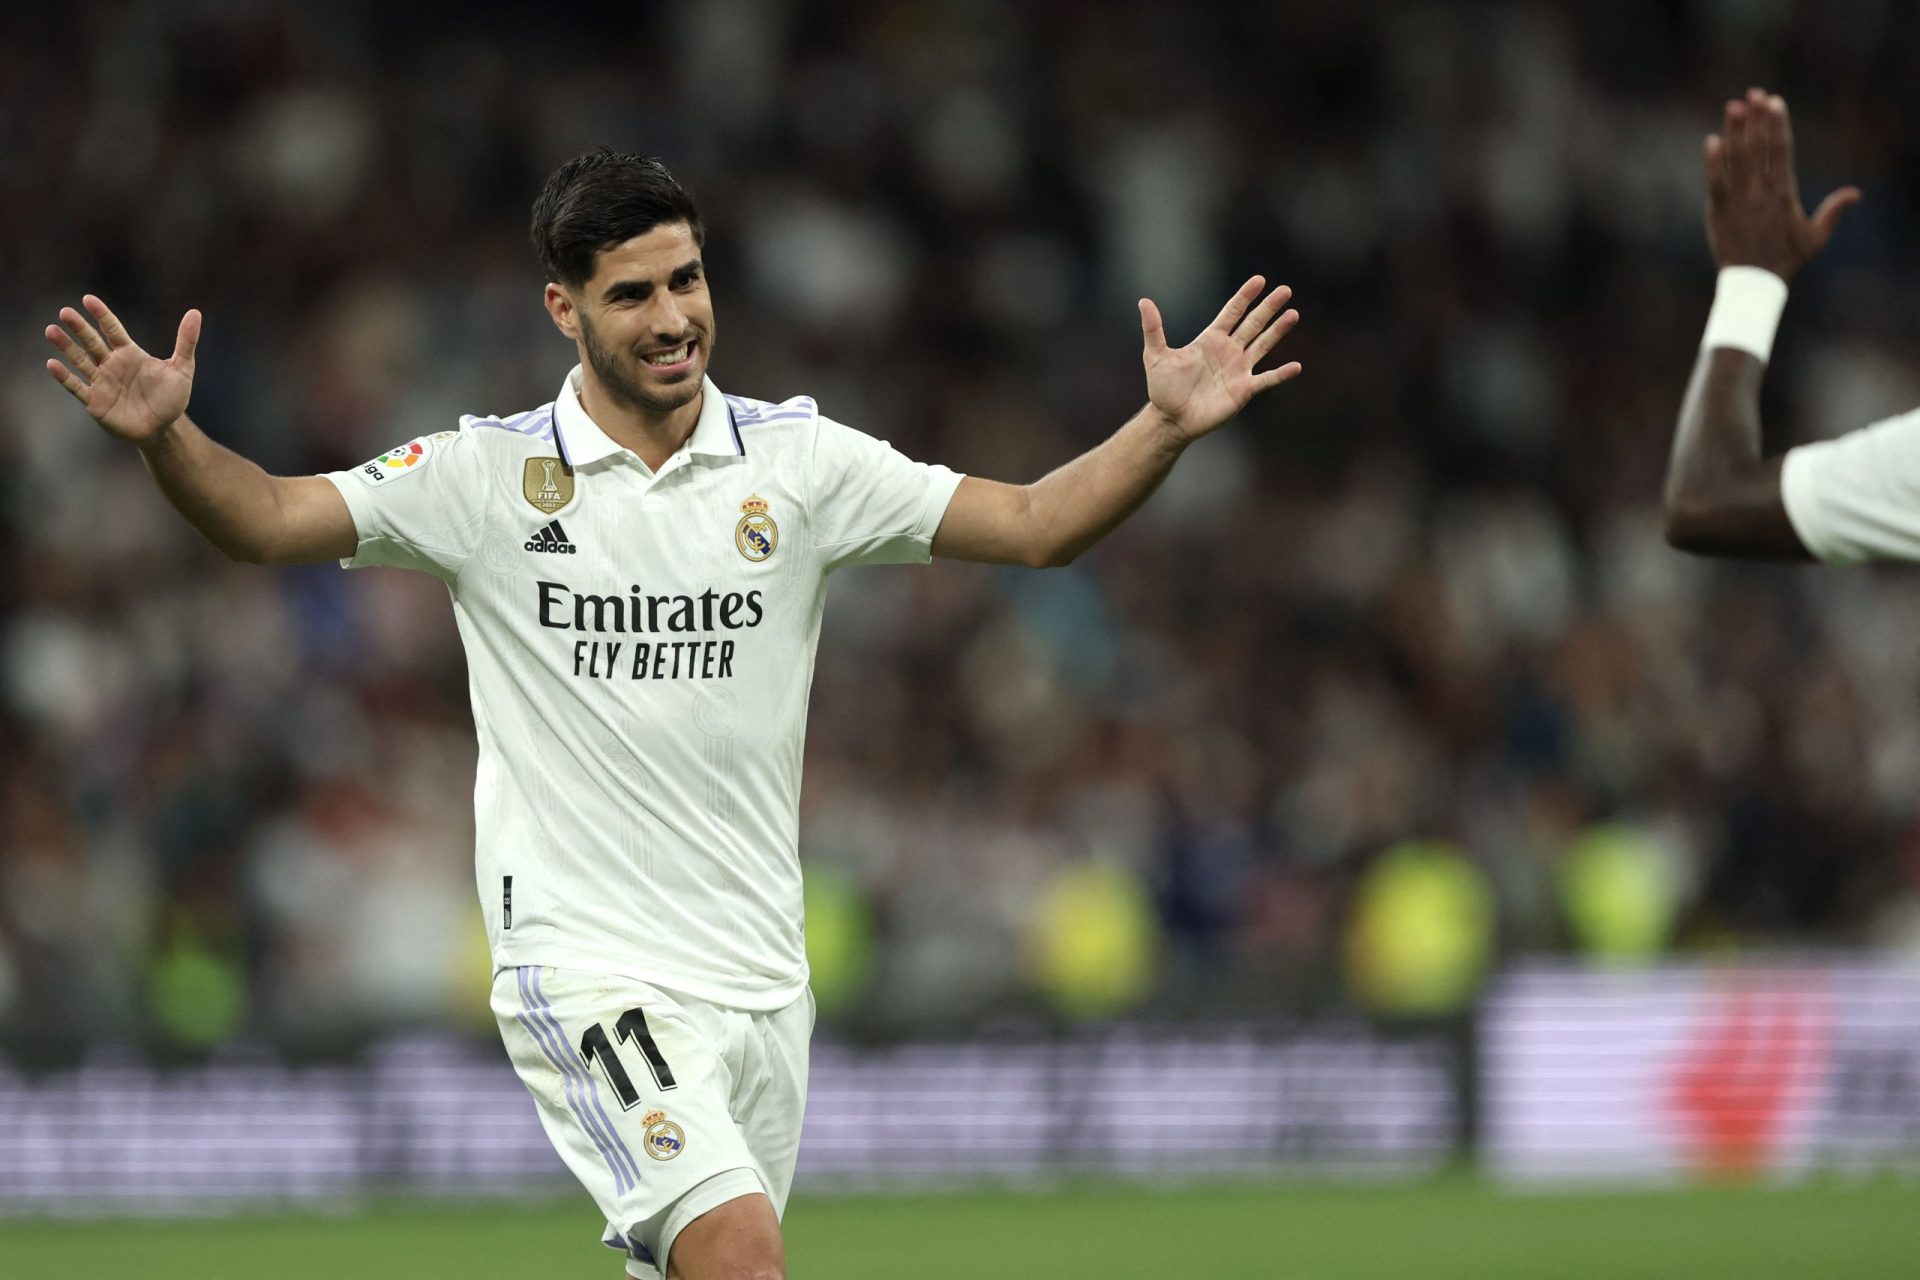 Real Madrid acusado de substituição “ilegal” arrisca derrota